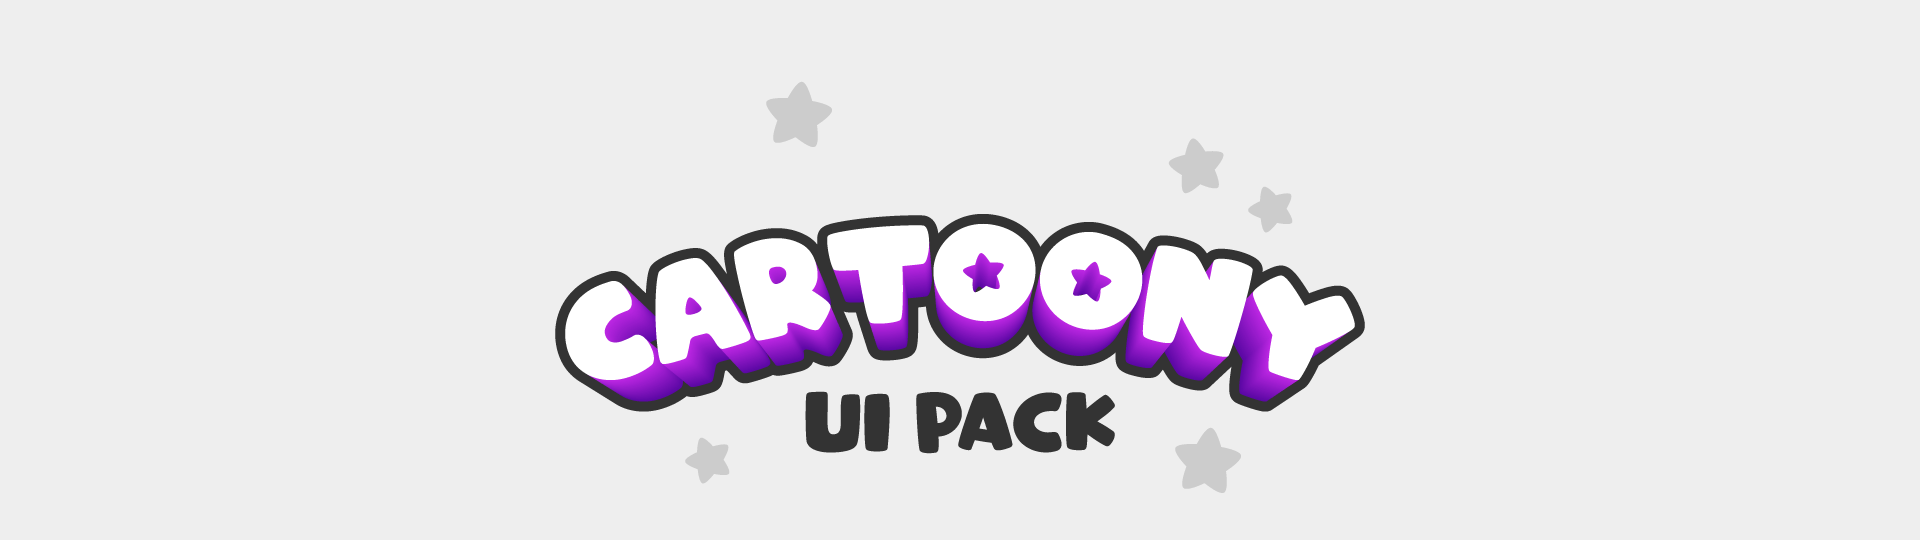 Cartoony UI Pack